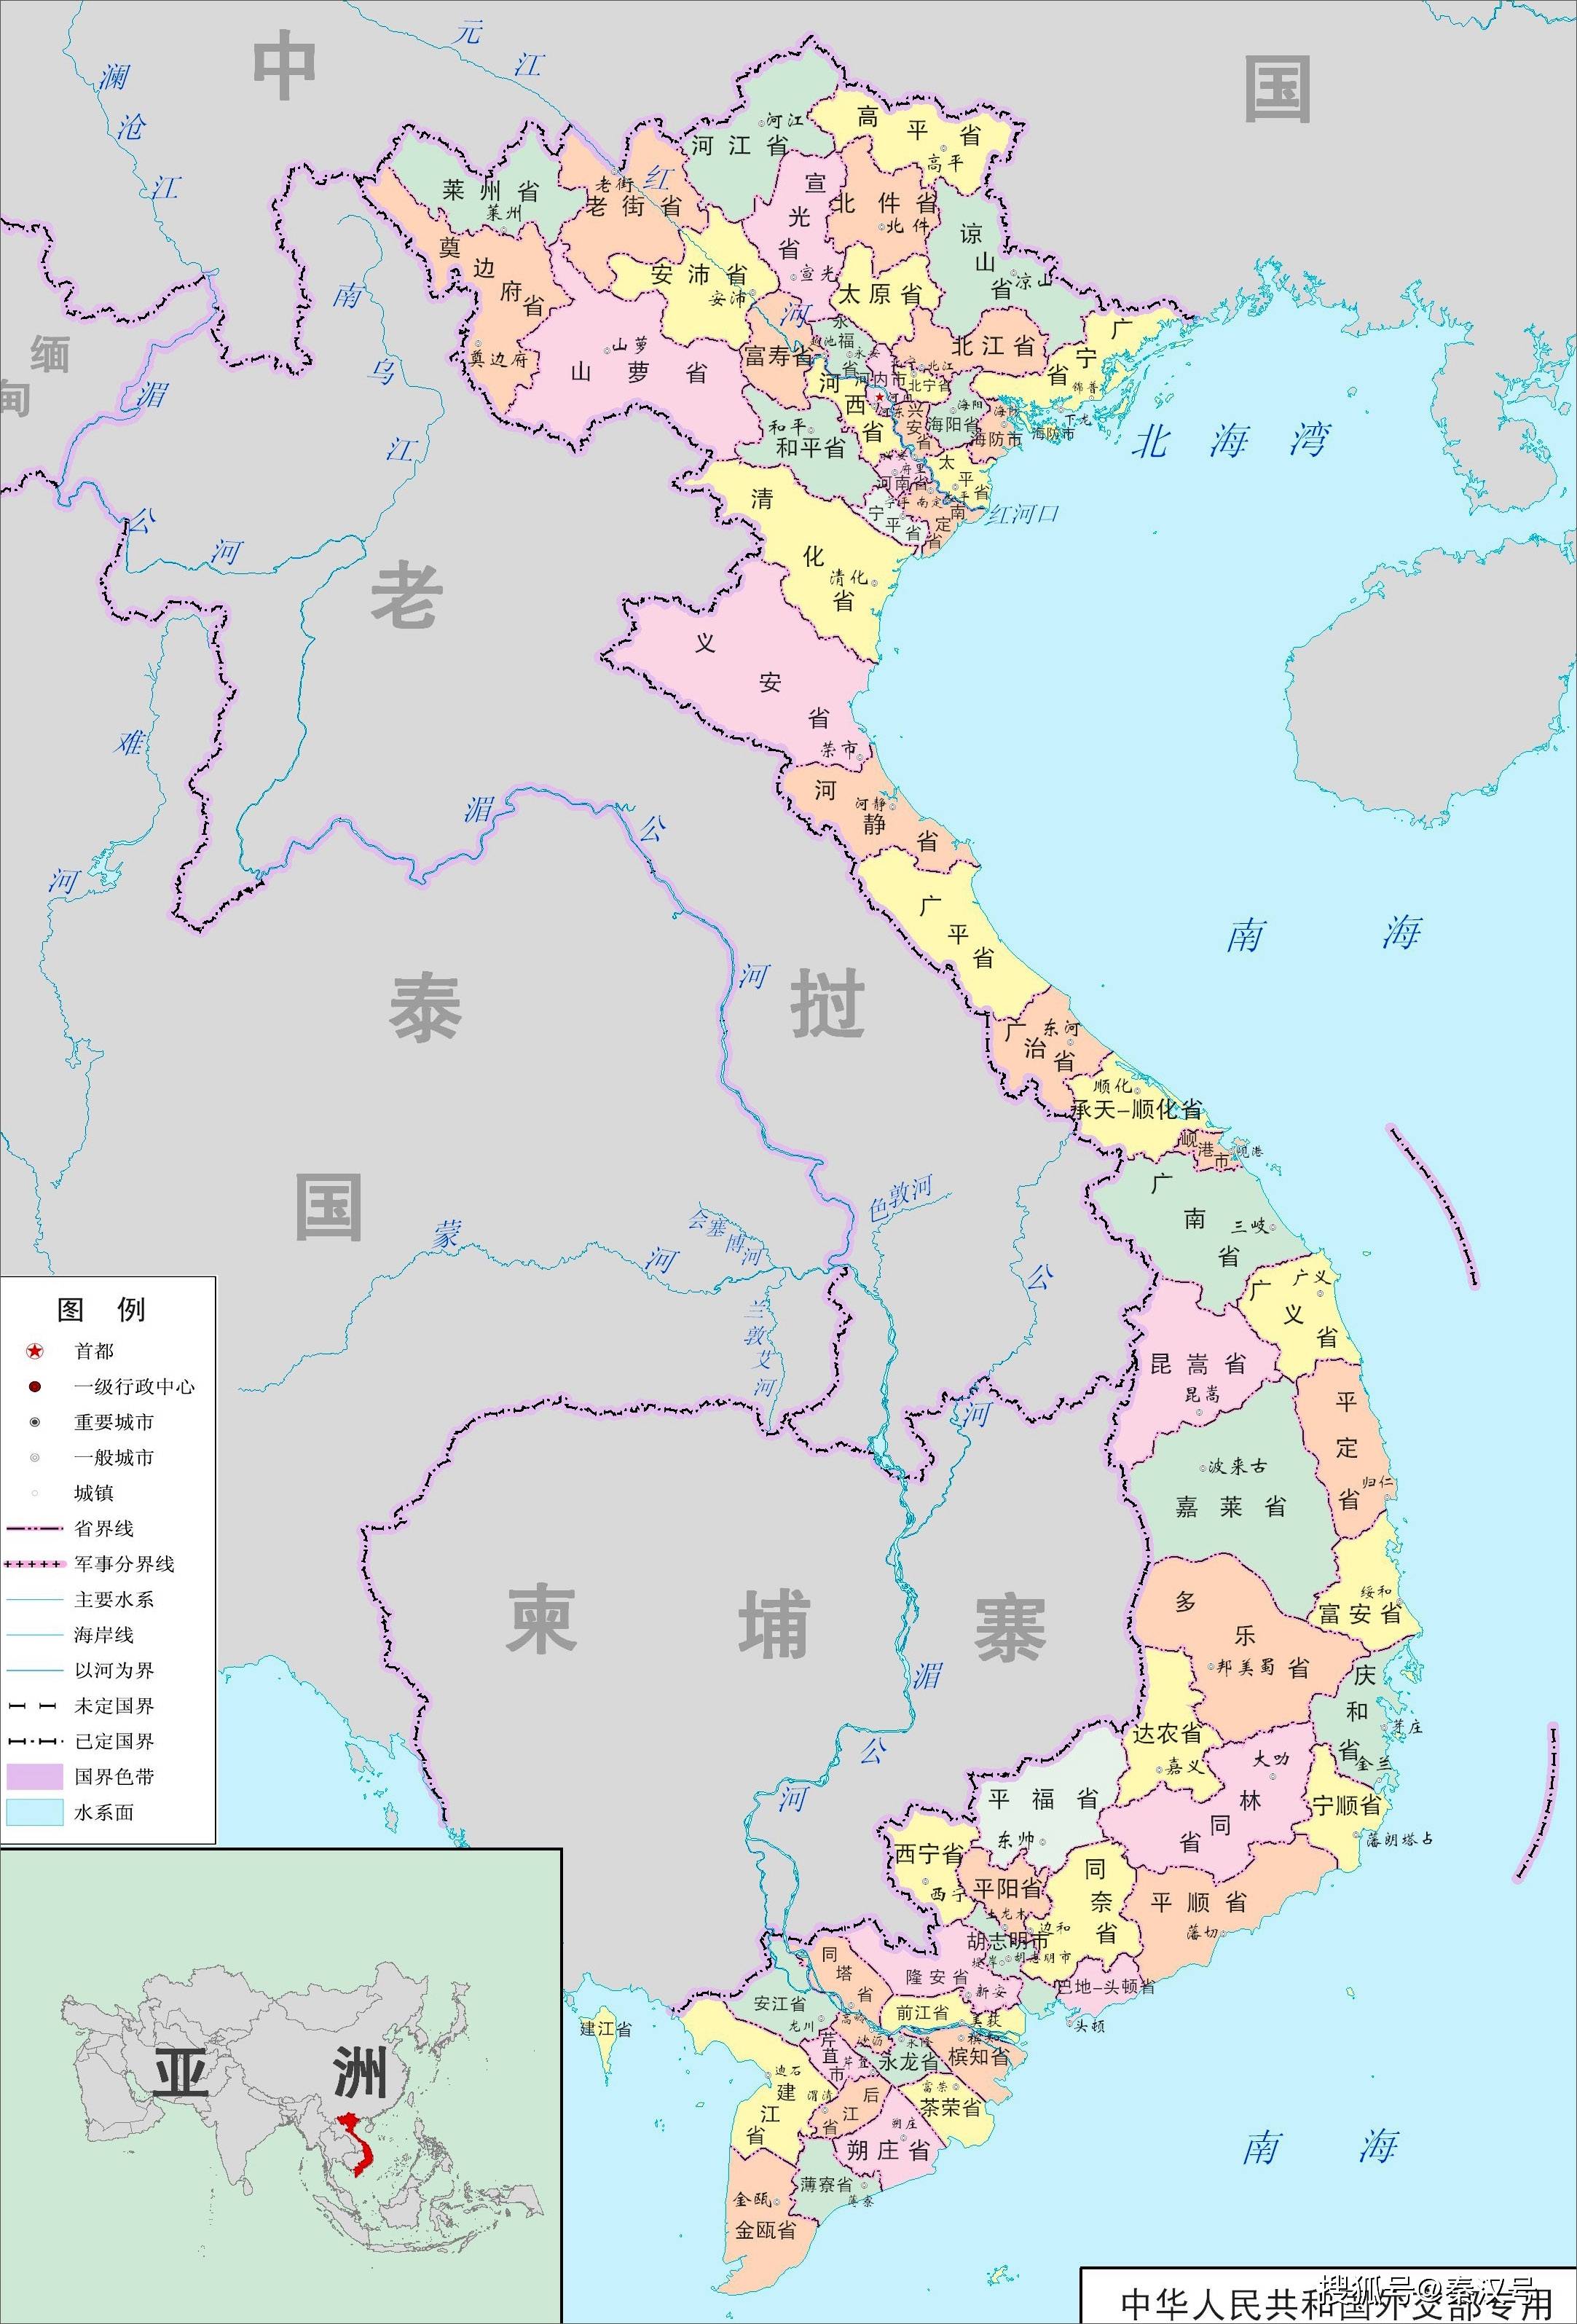 原创越南统一后为何定都河内而不选择经济繁荣的胡志明市